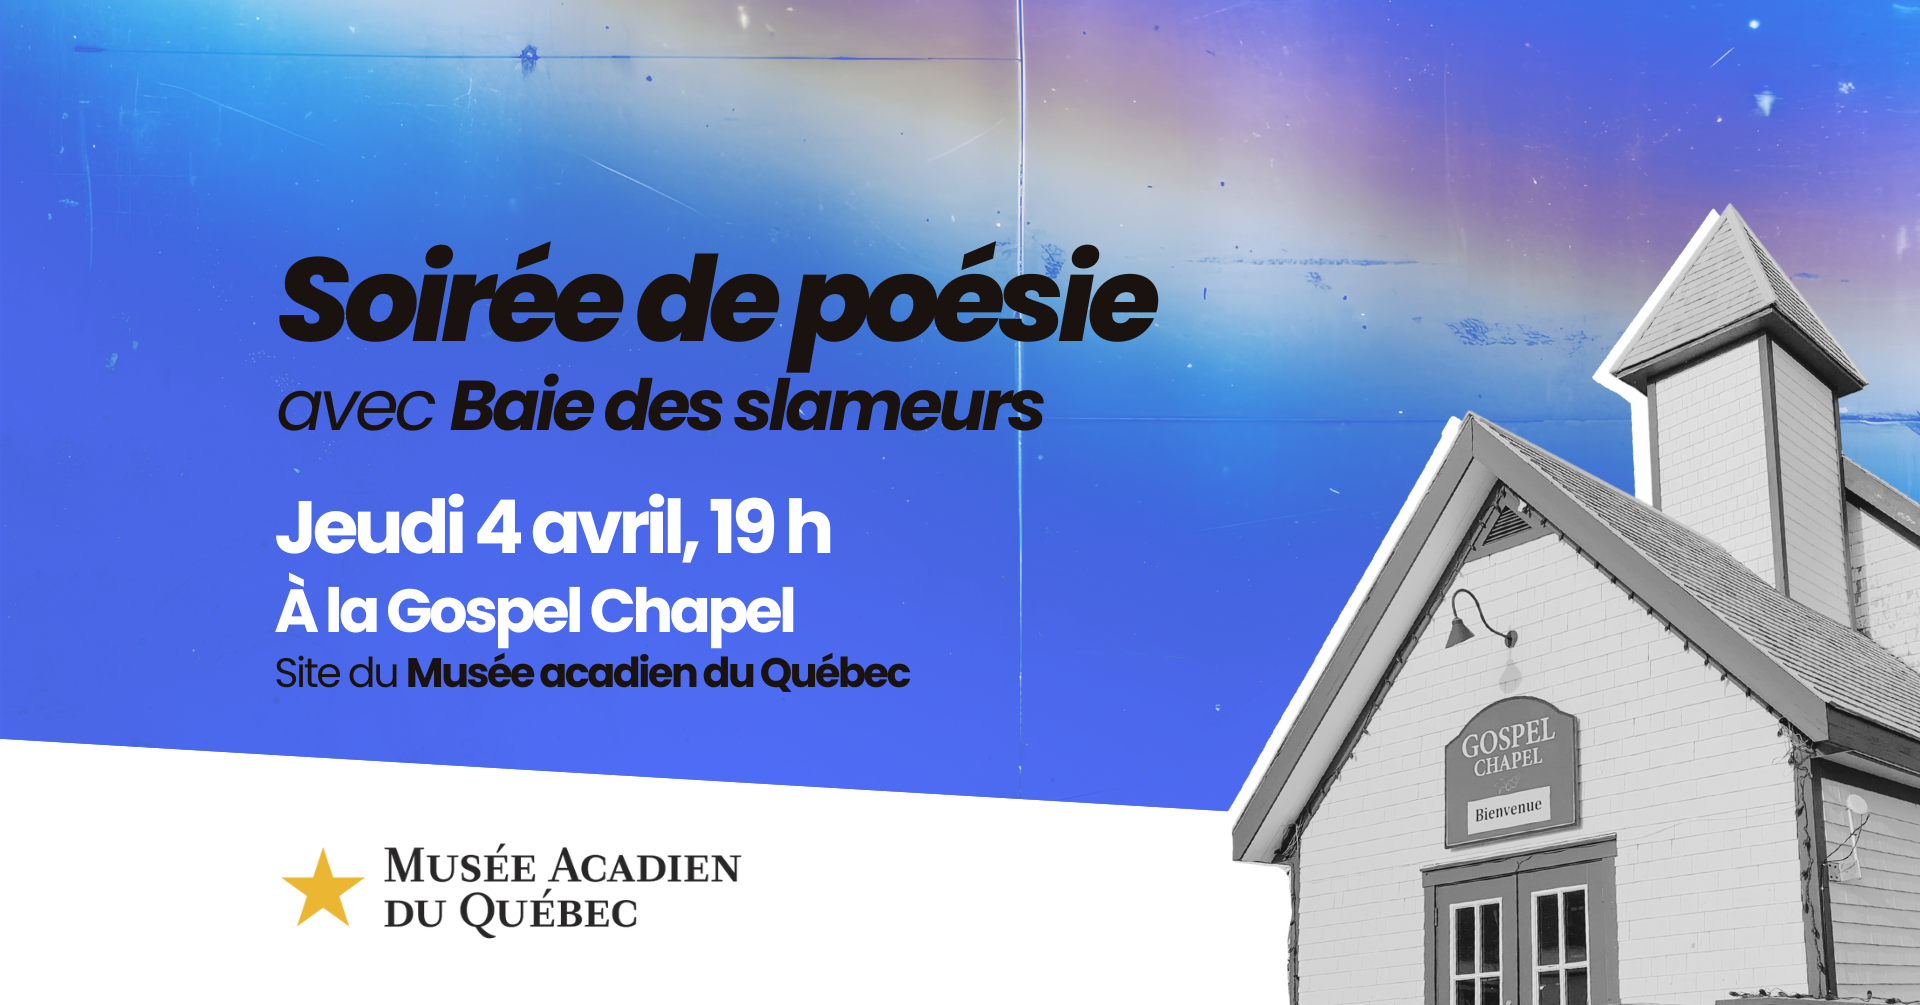 Soirée de poésie à la Gospel Chapel du Musée acadien du Québec